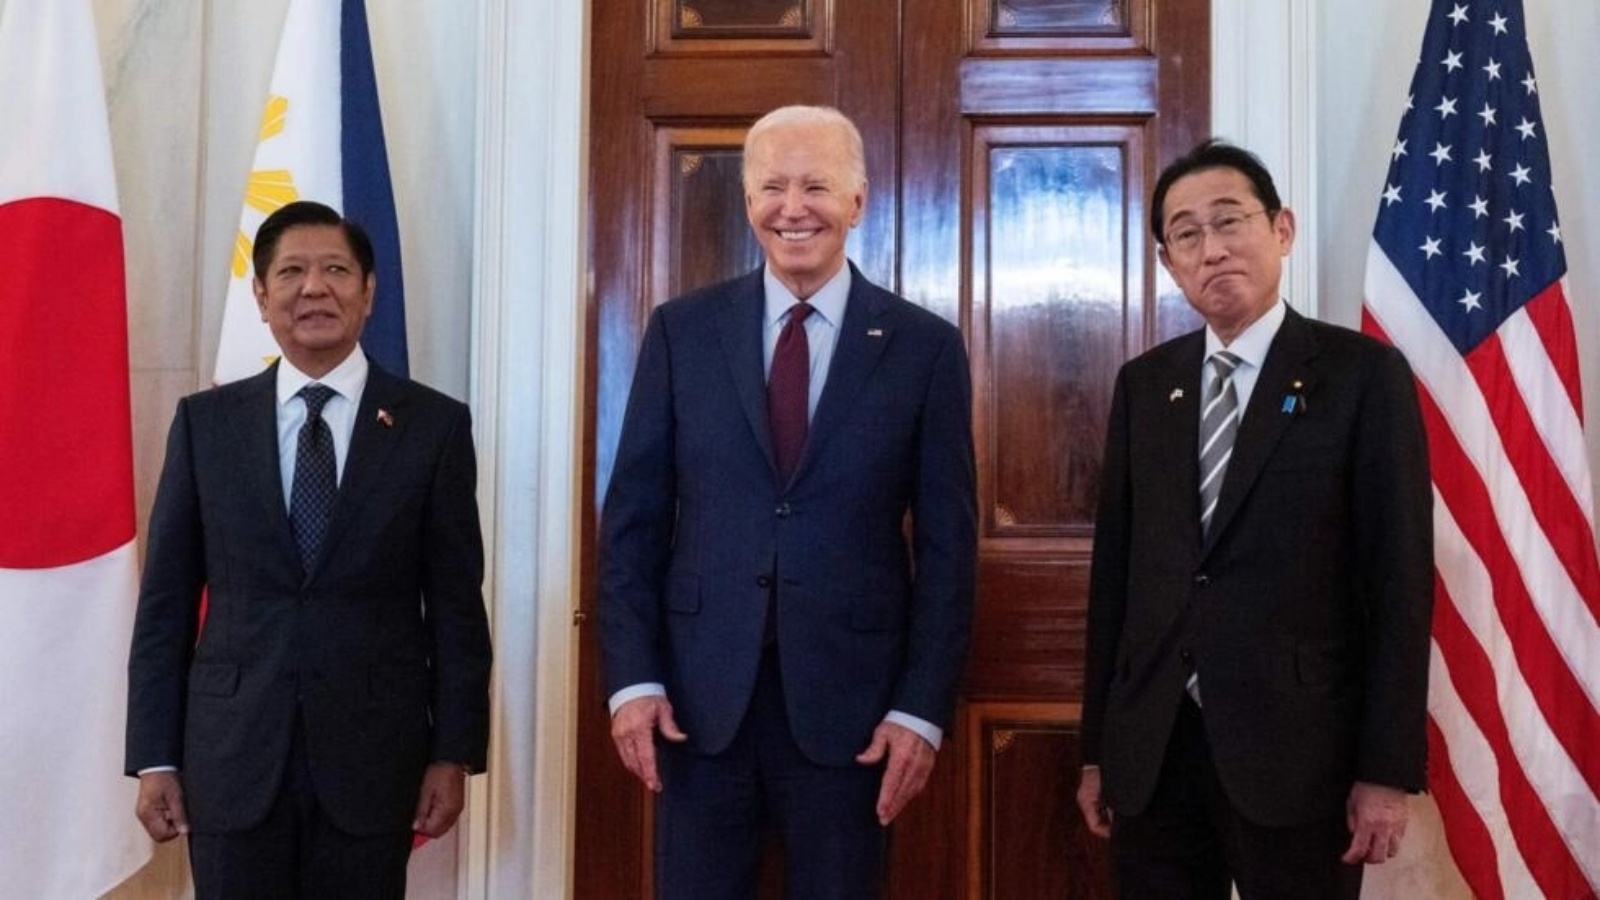 الرئيس الأميركي جو بايدن متحدثا للصحافة بين رئيس وزراء اليابان فوميو كيشيدا (يمين) ورئيس الفيليبين فرديناند ماركوس قبيل اجتماع ثلاثي في البيت الأبيض في 11 نيسان (أبريل) 2024 